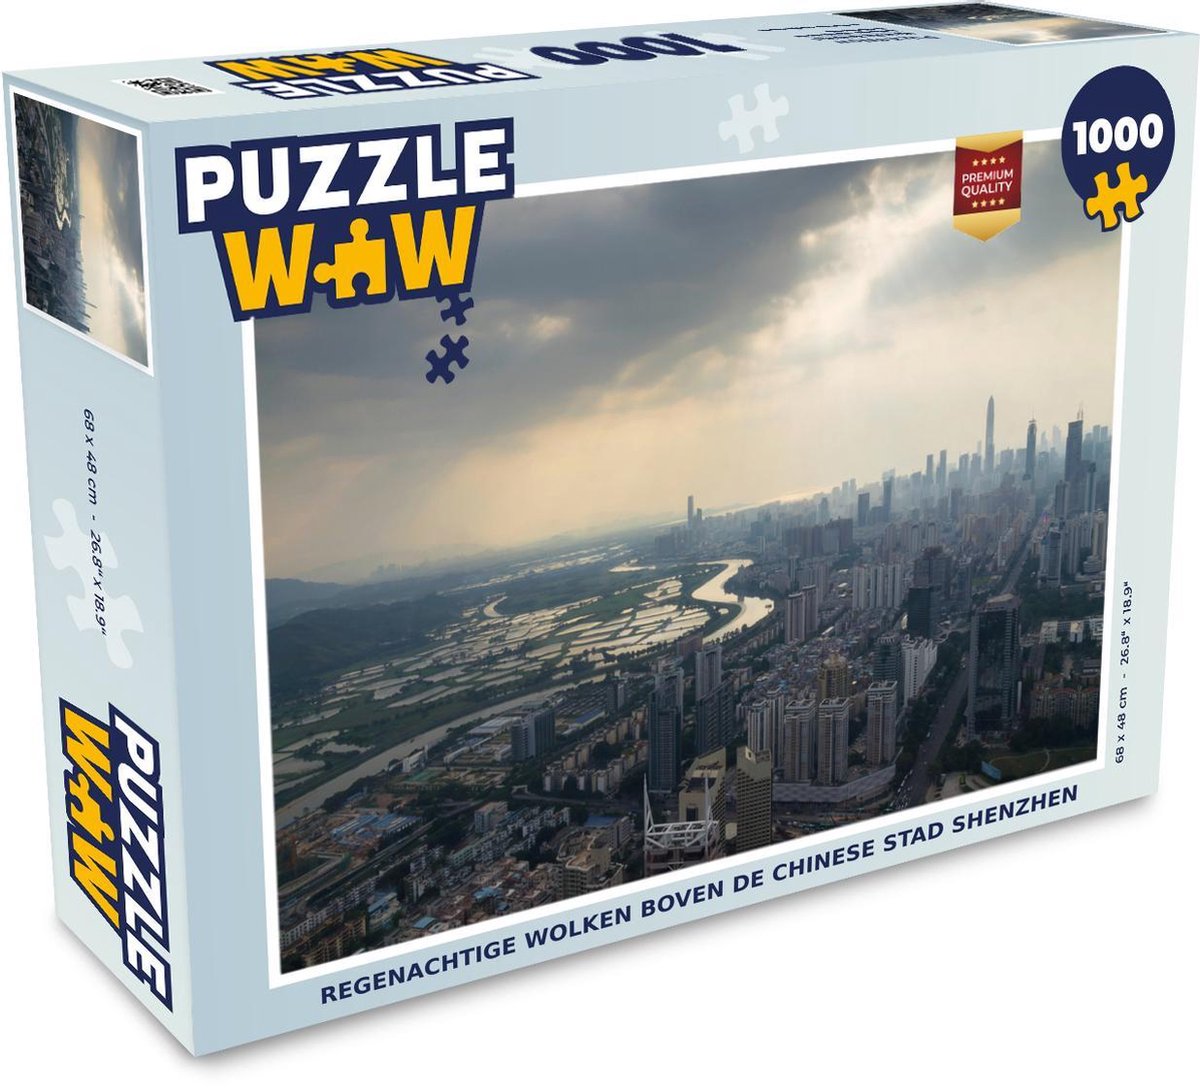 Puzzel 1000 stukjes volwassenen Shenzhen 1000 stukjes - Regenachtige wolken boven de Chinese stad Shenzhen  - PuzzleWow heeft +100000 puzzels